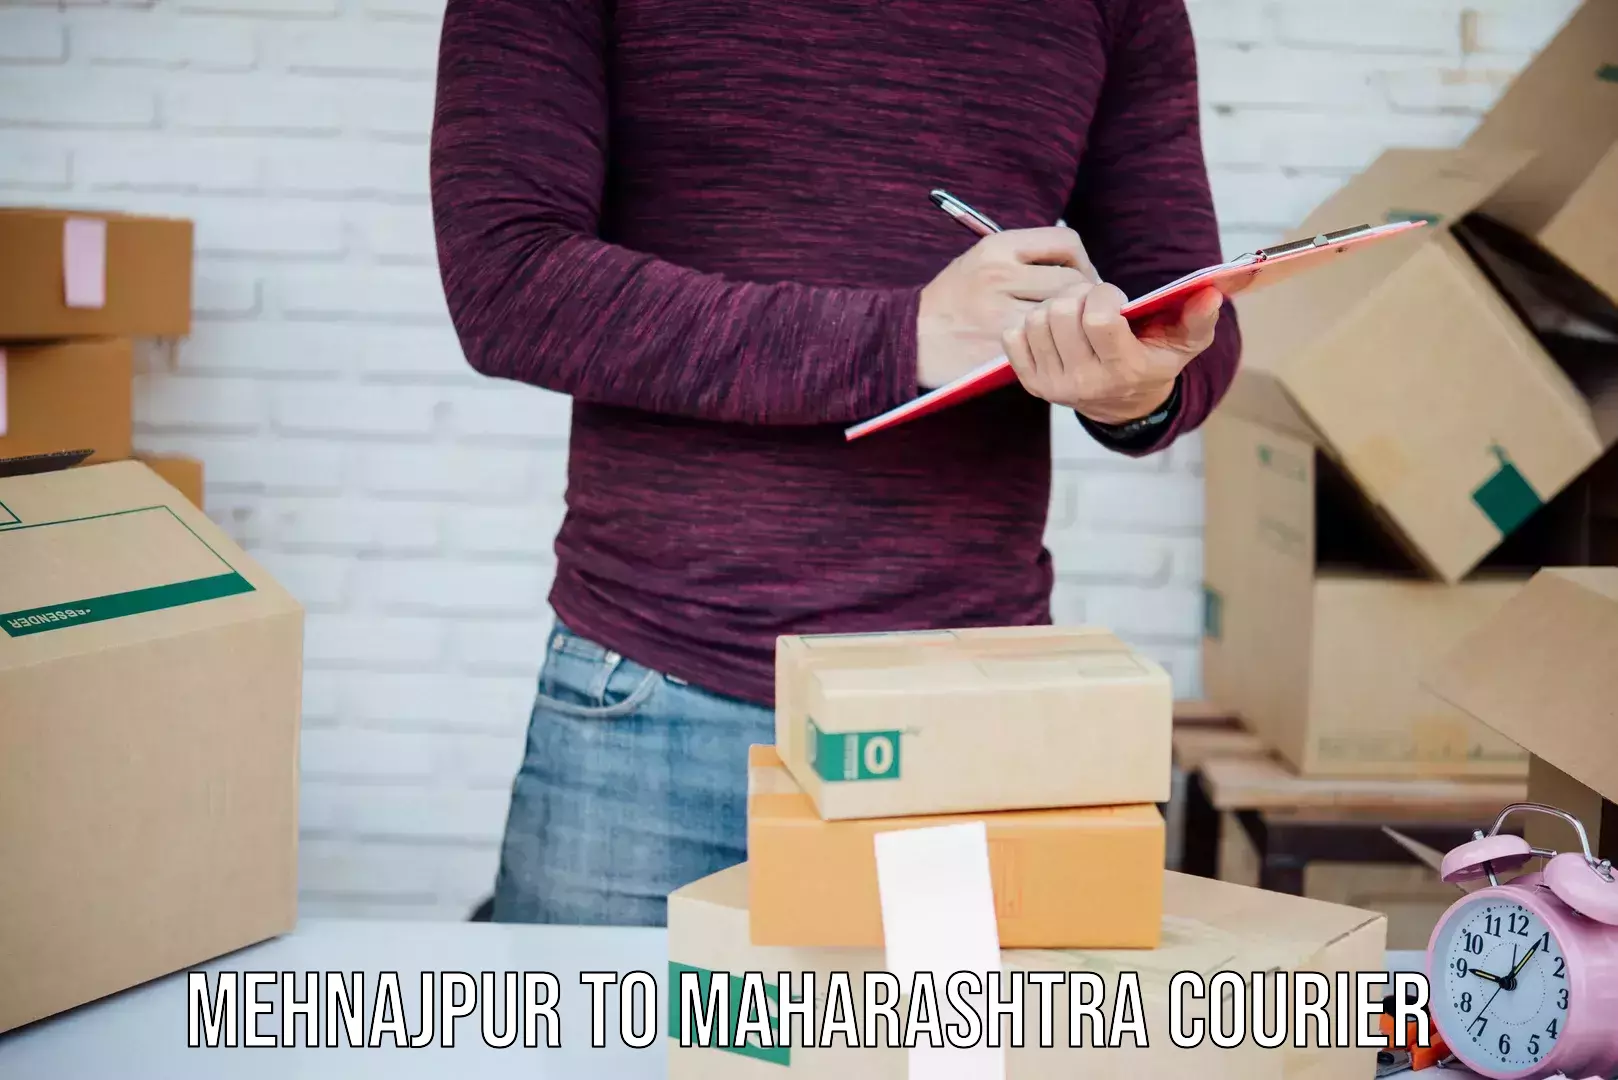 Pharmaceutical courier Mehnajpur to Maharashtra